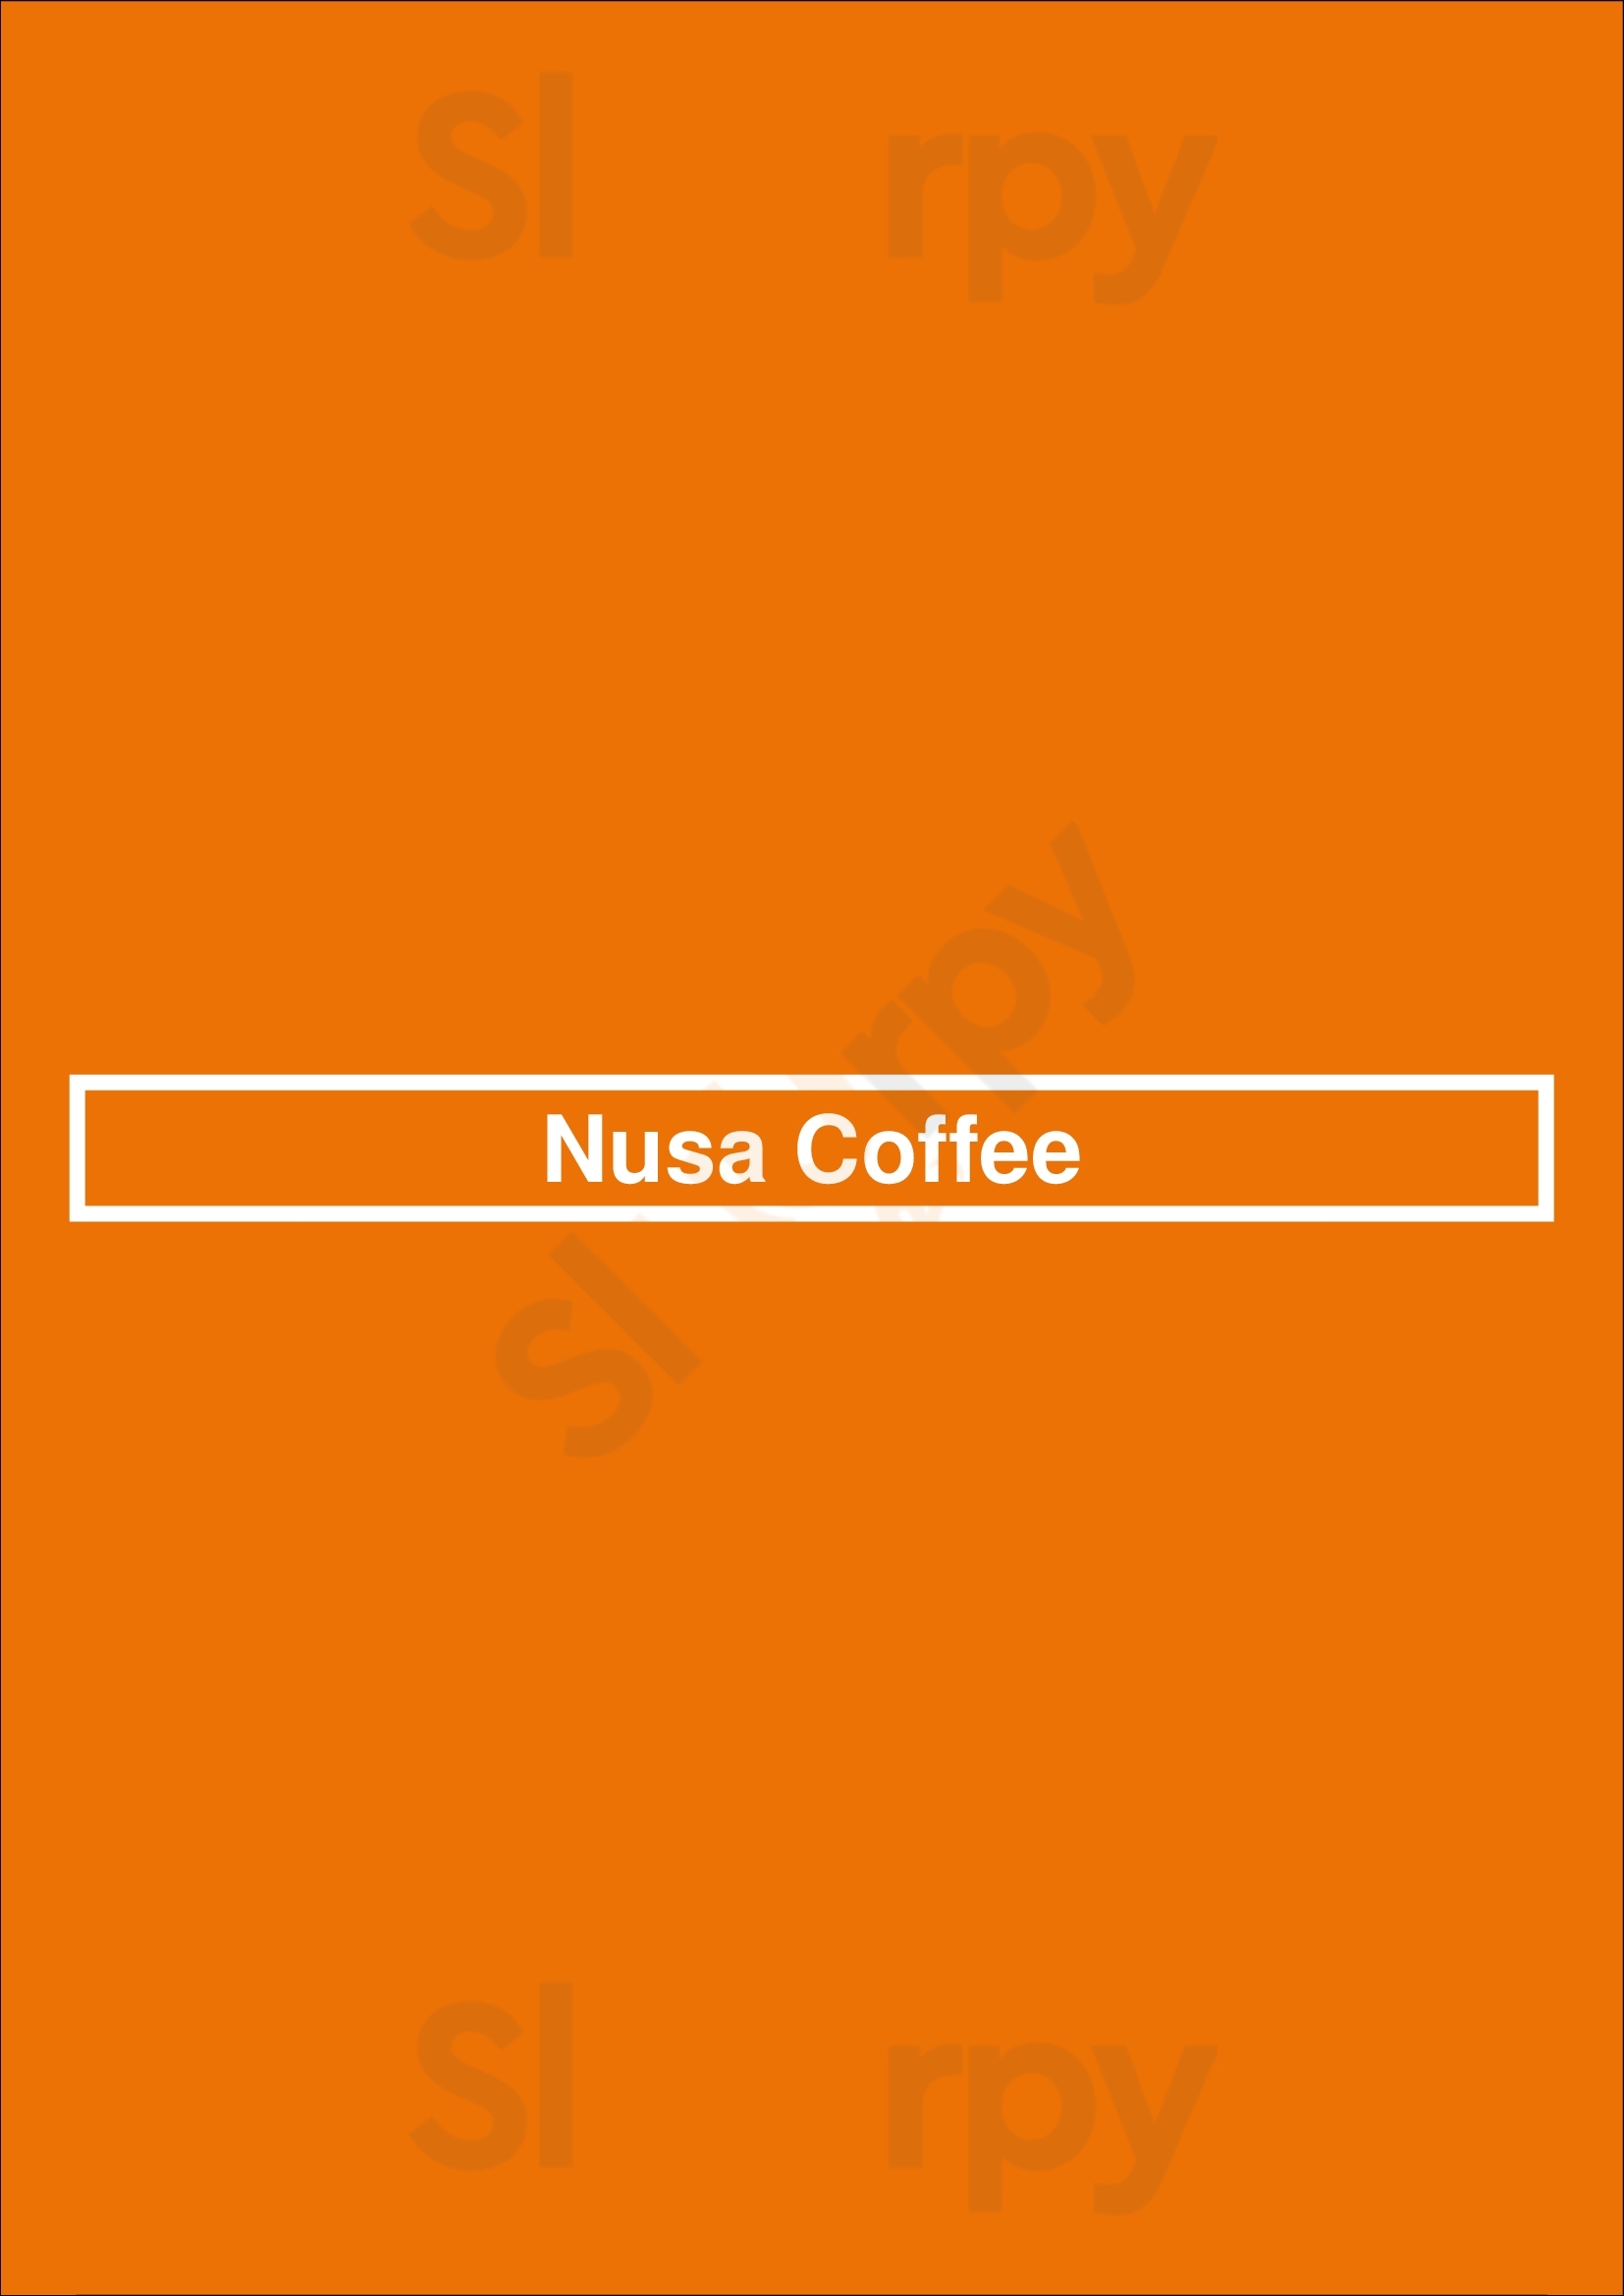 Nusa Coffee Vancouver Menu - 1